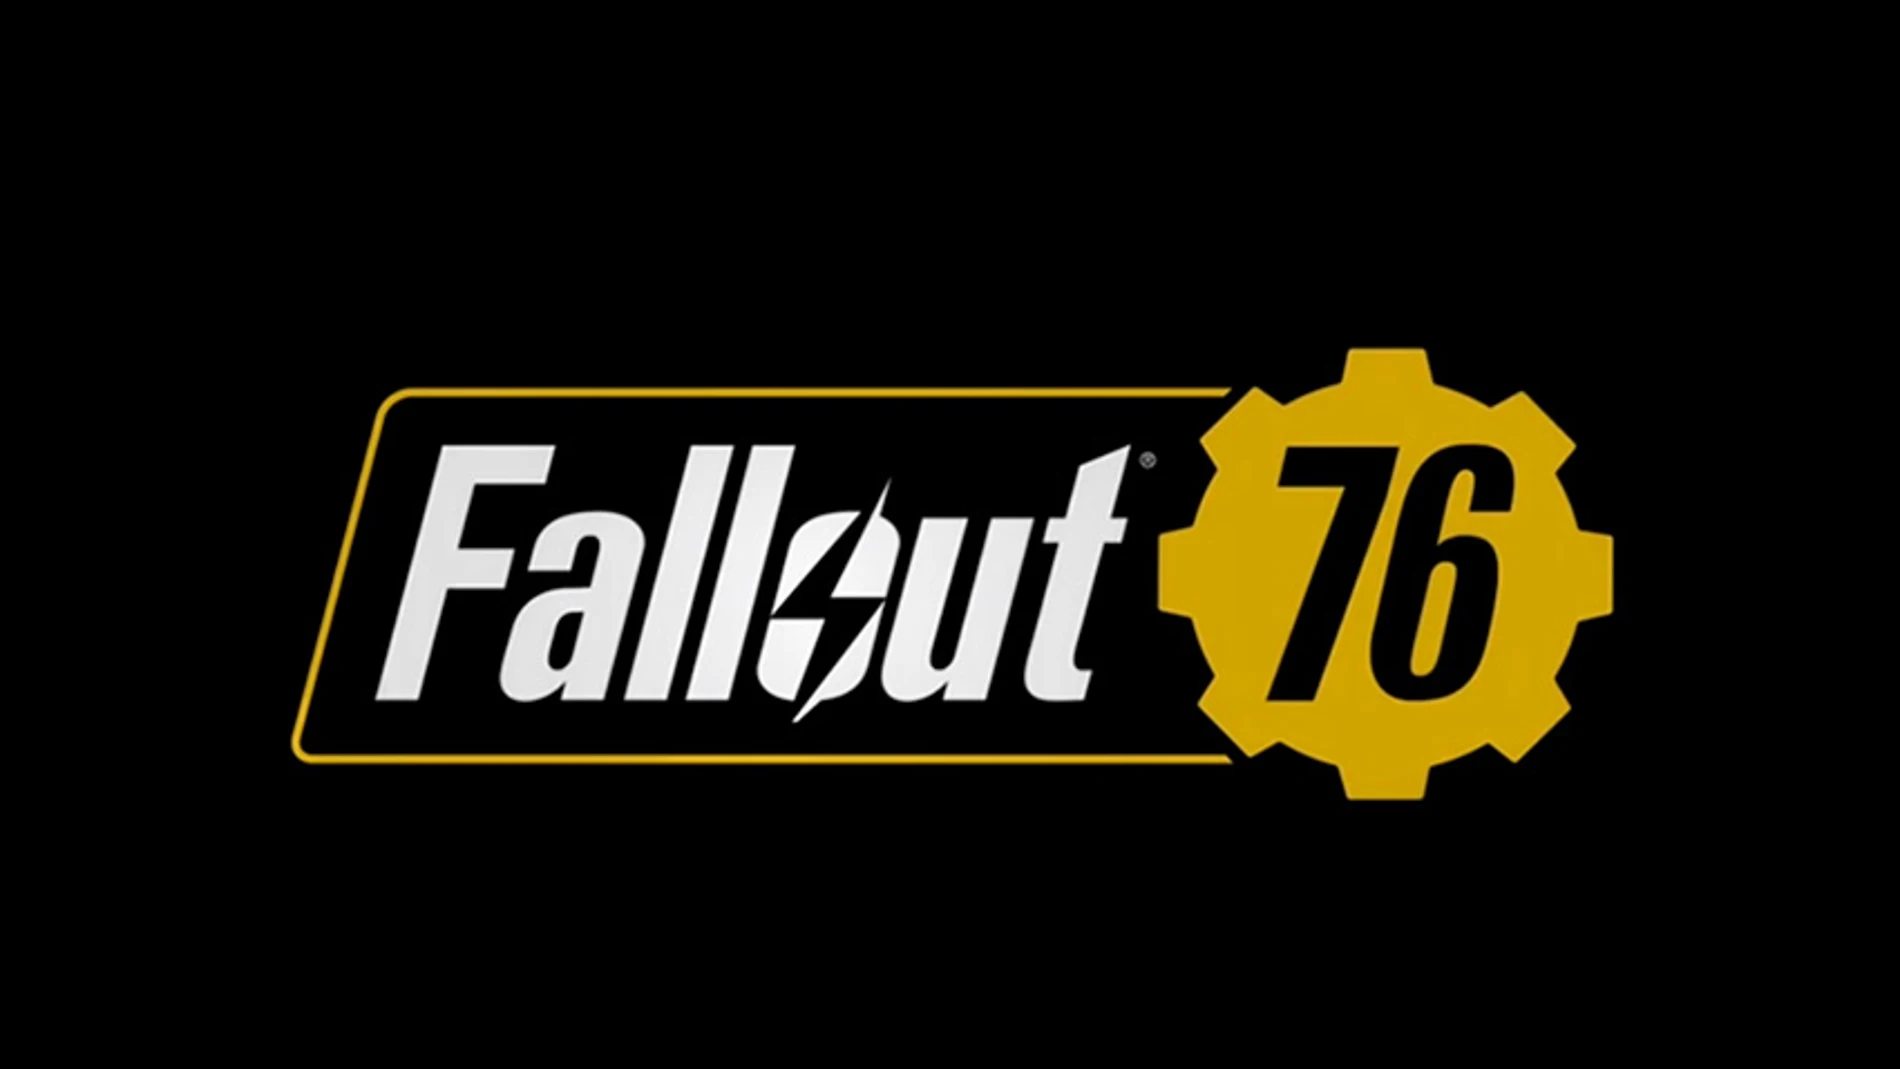 Fallout 76 llegará a Steam acompañado por Doom Eternal, Rage 2 y otros títulos de Bethesda